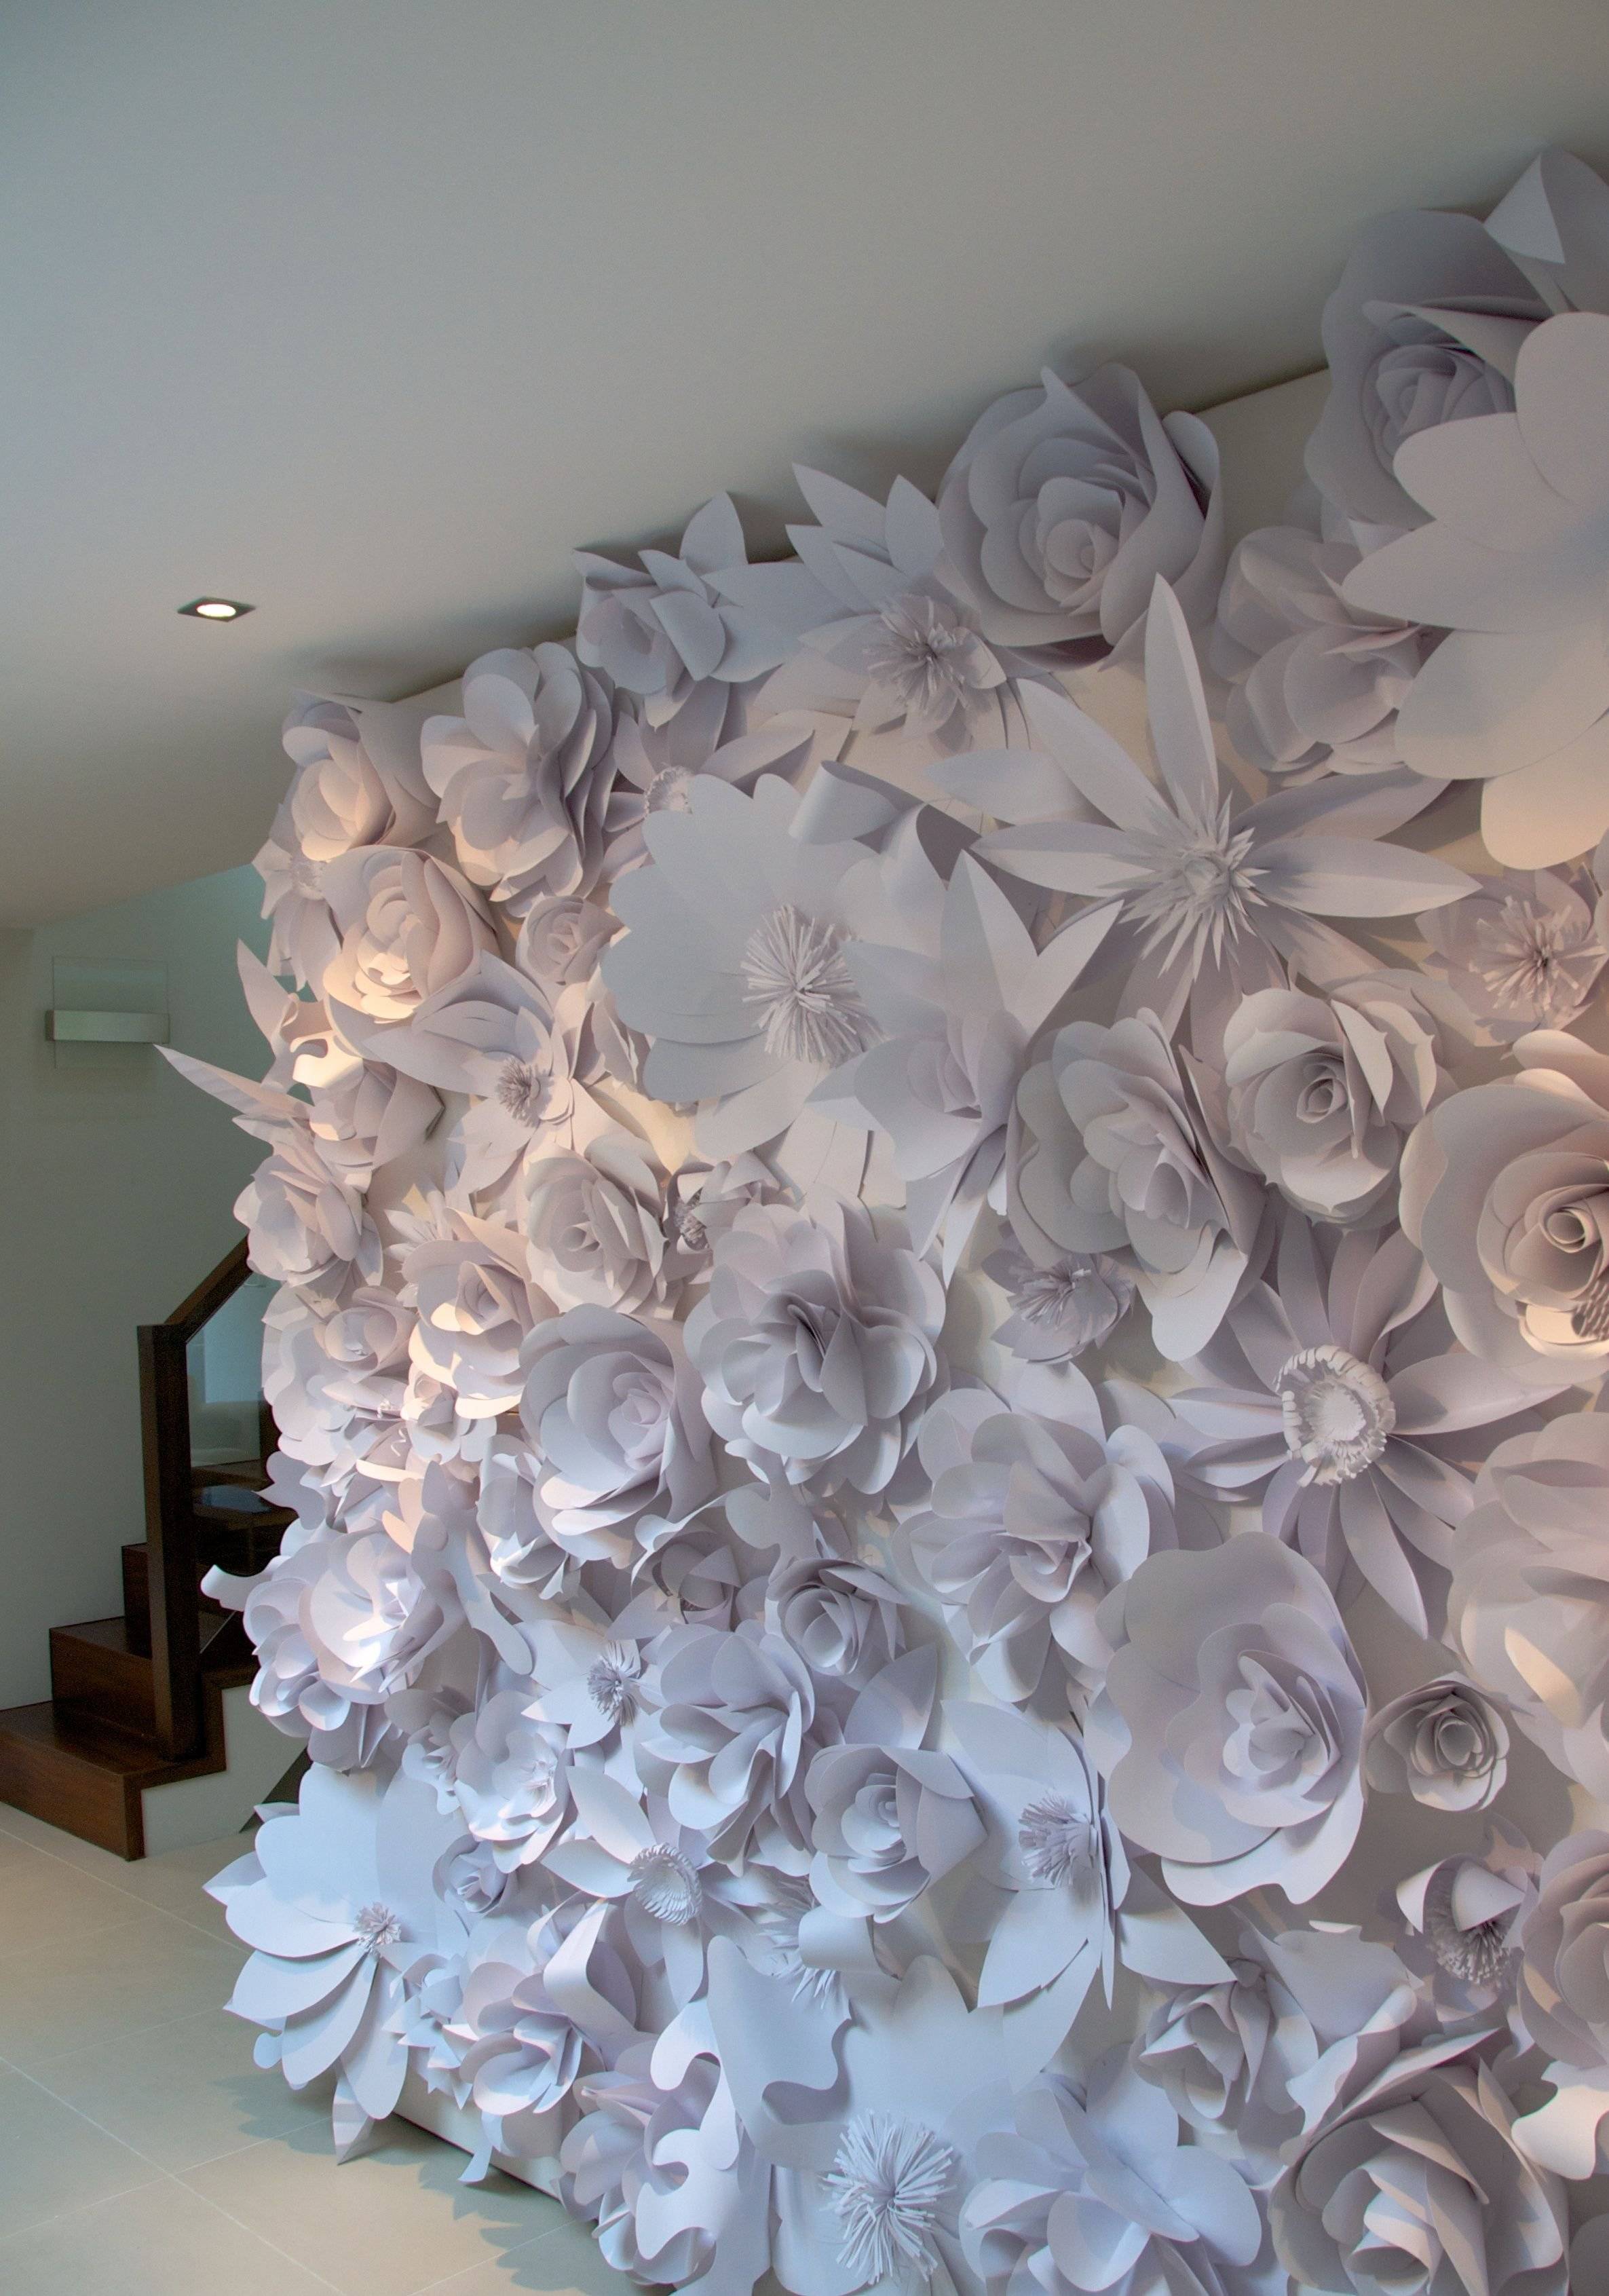 Бумажные цветы для оформления зала своими руками - 13 идей с фото